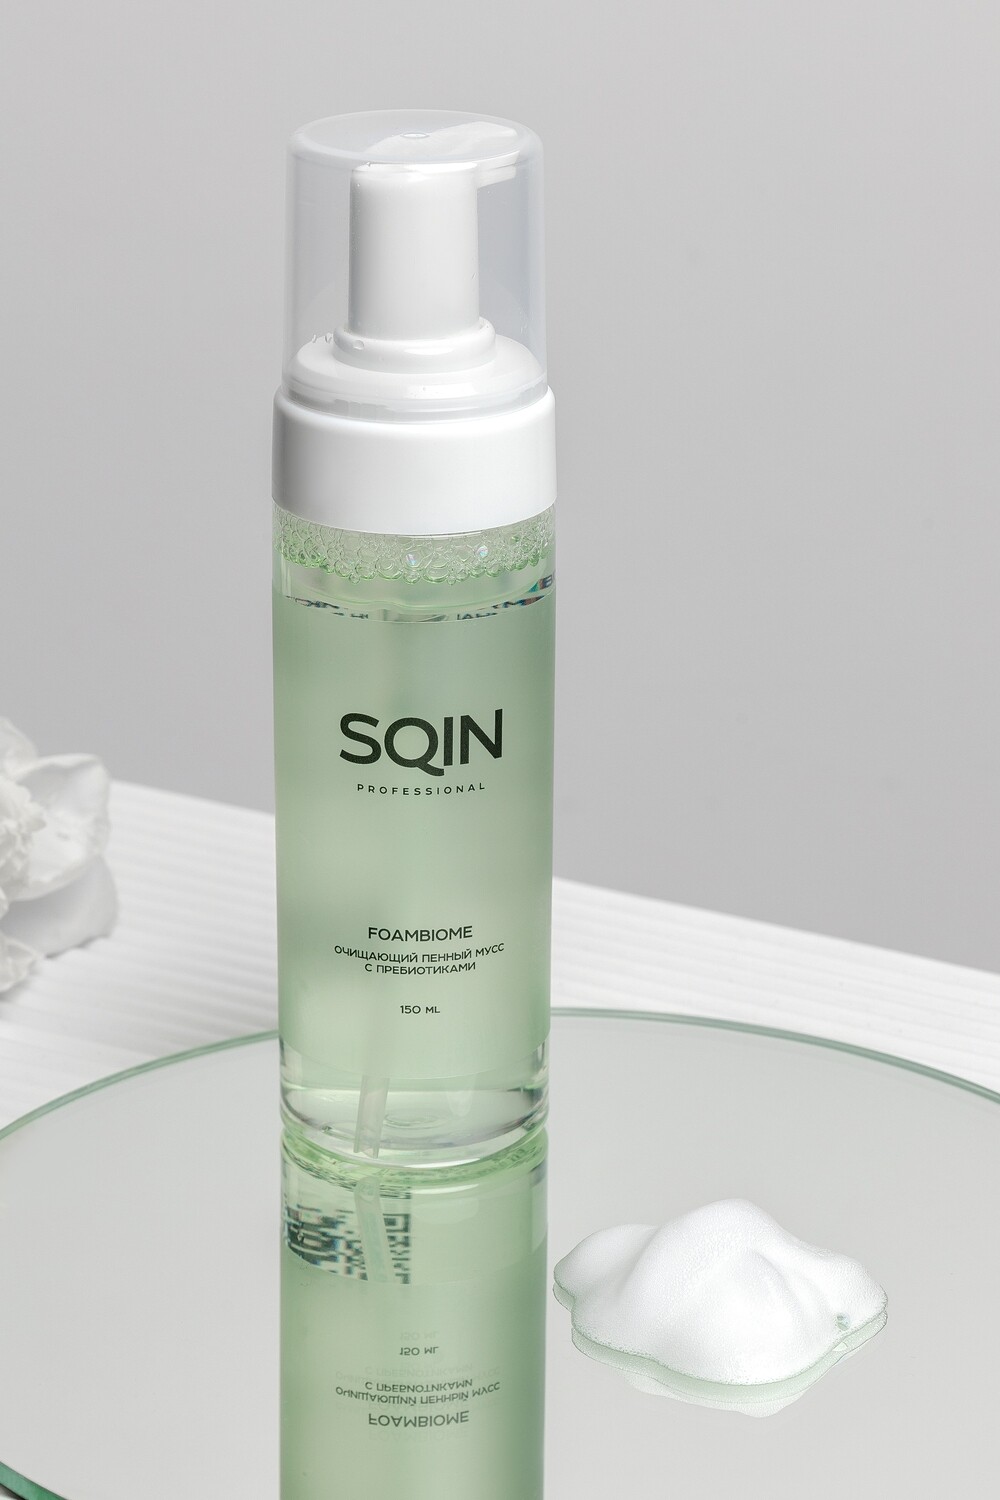 SQIN PRO FOAMBIOME Очищающий пенный мусс с пребиотиками рН 5.5